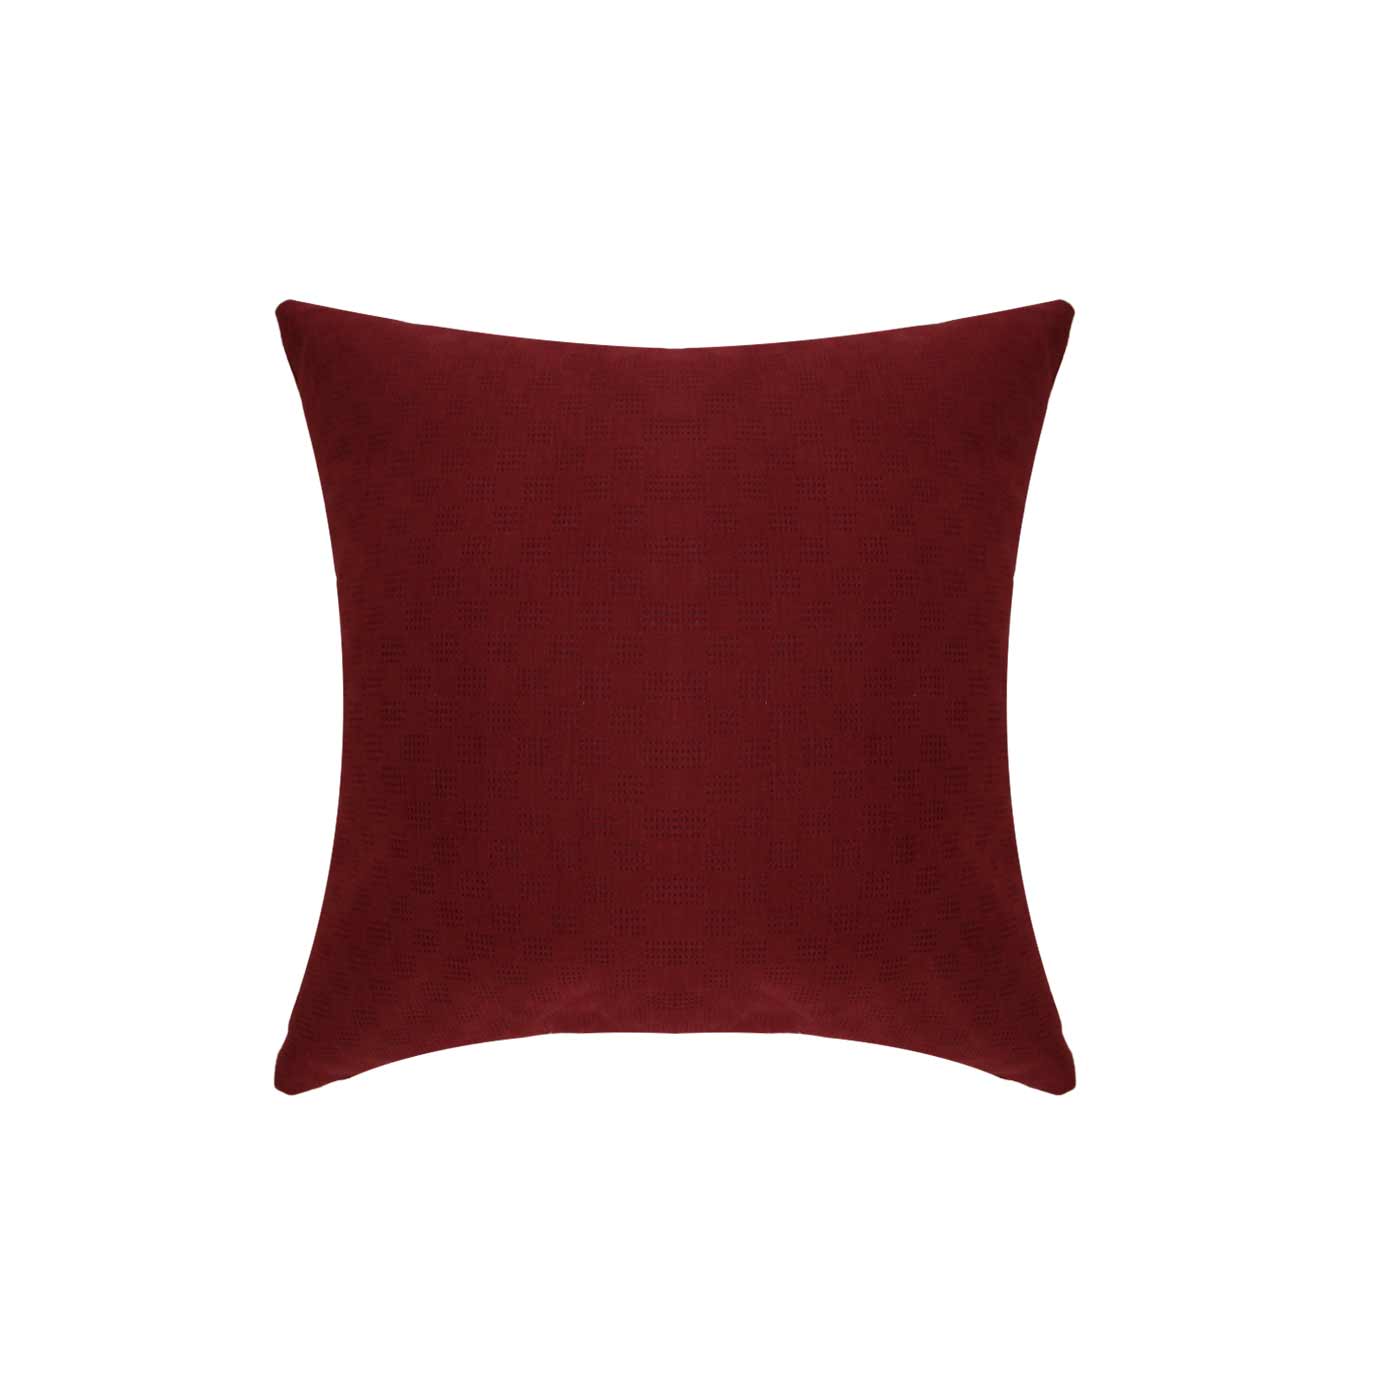 Muko Perforated Red Cushion